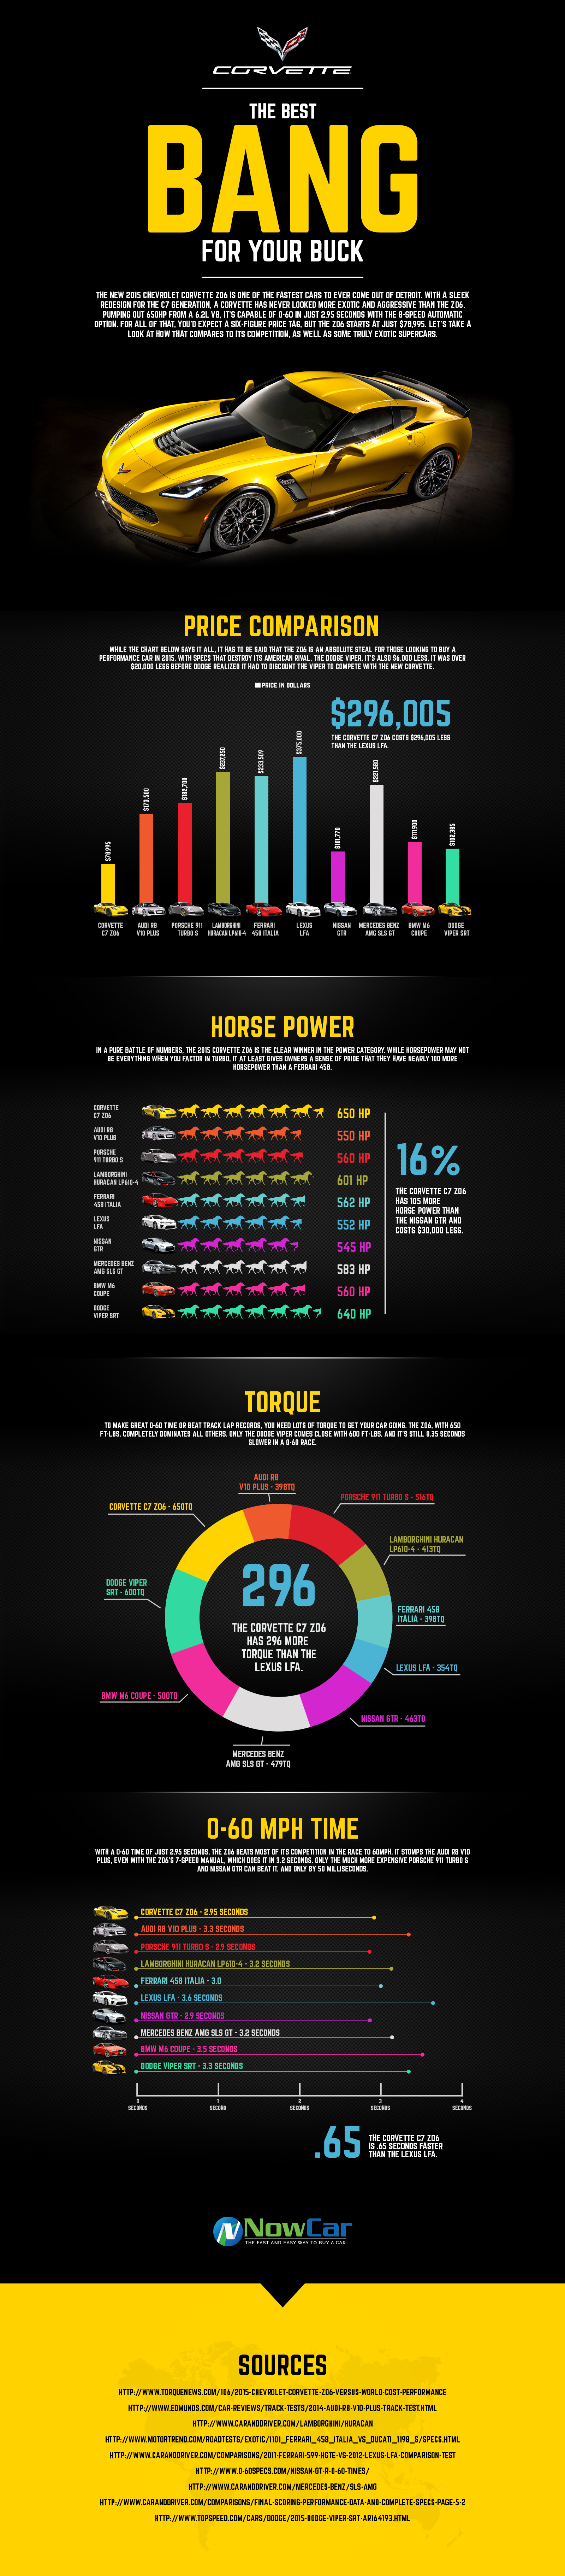 2015 Corvette Z06 Infographic from NowCar